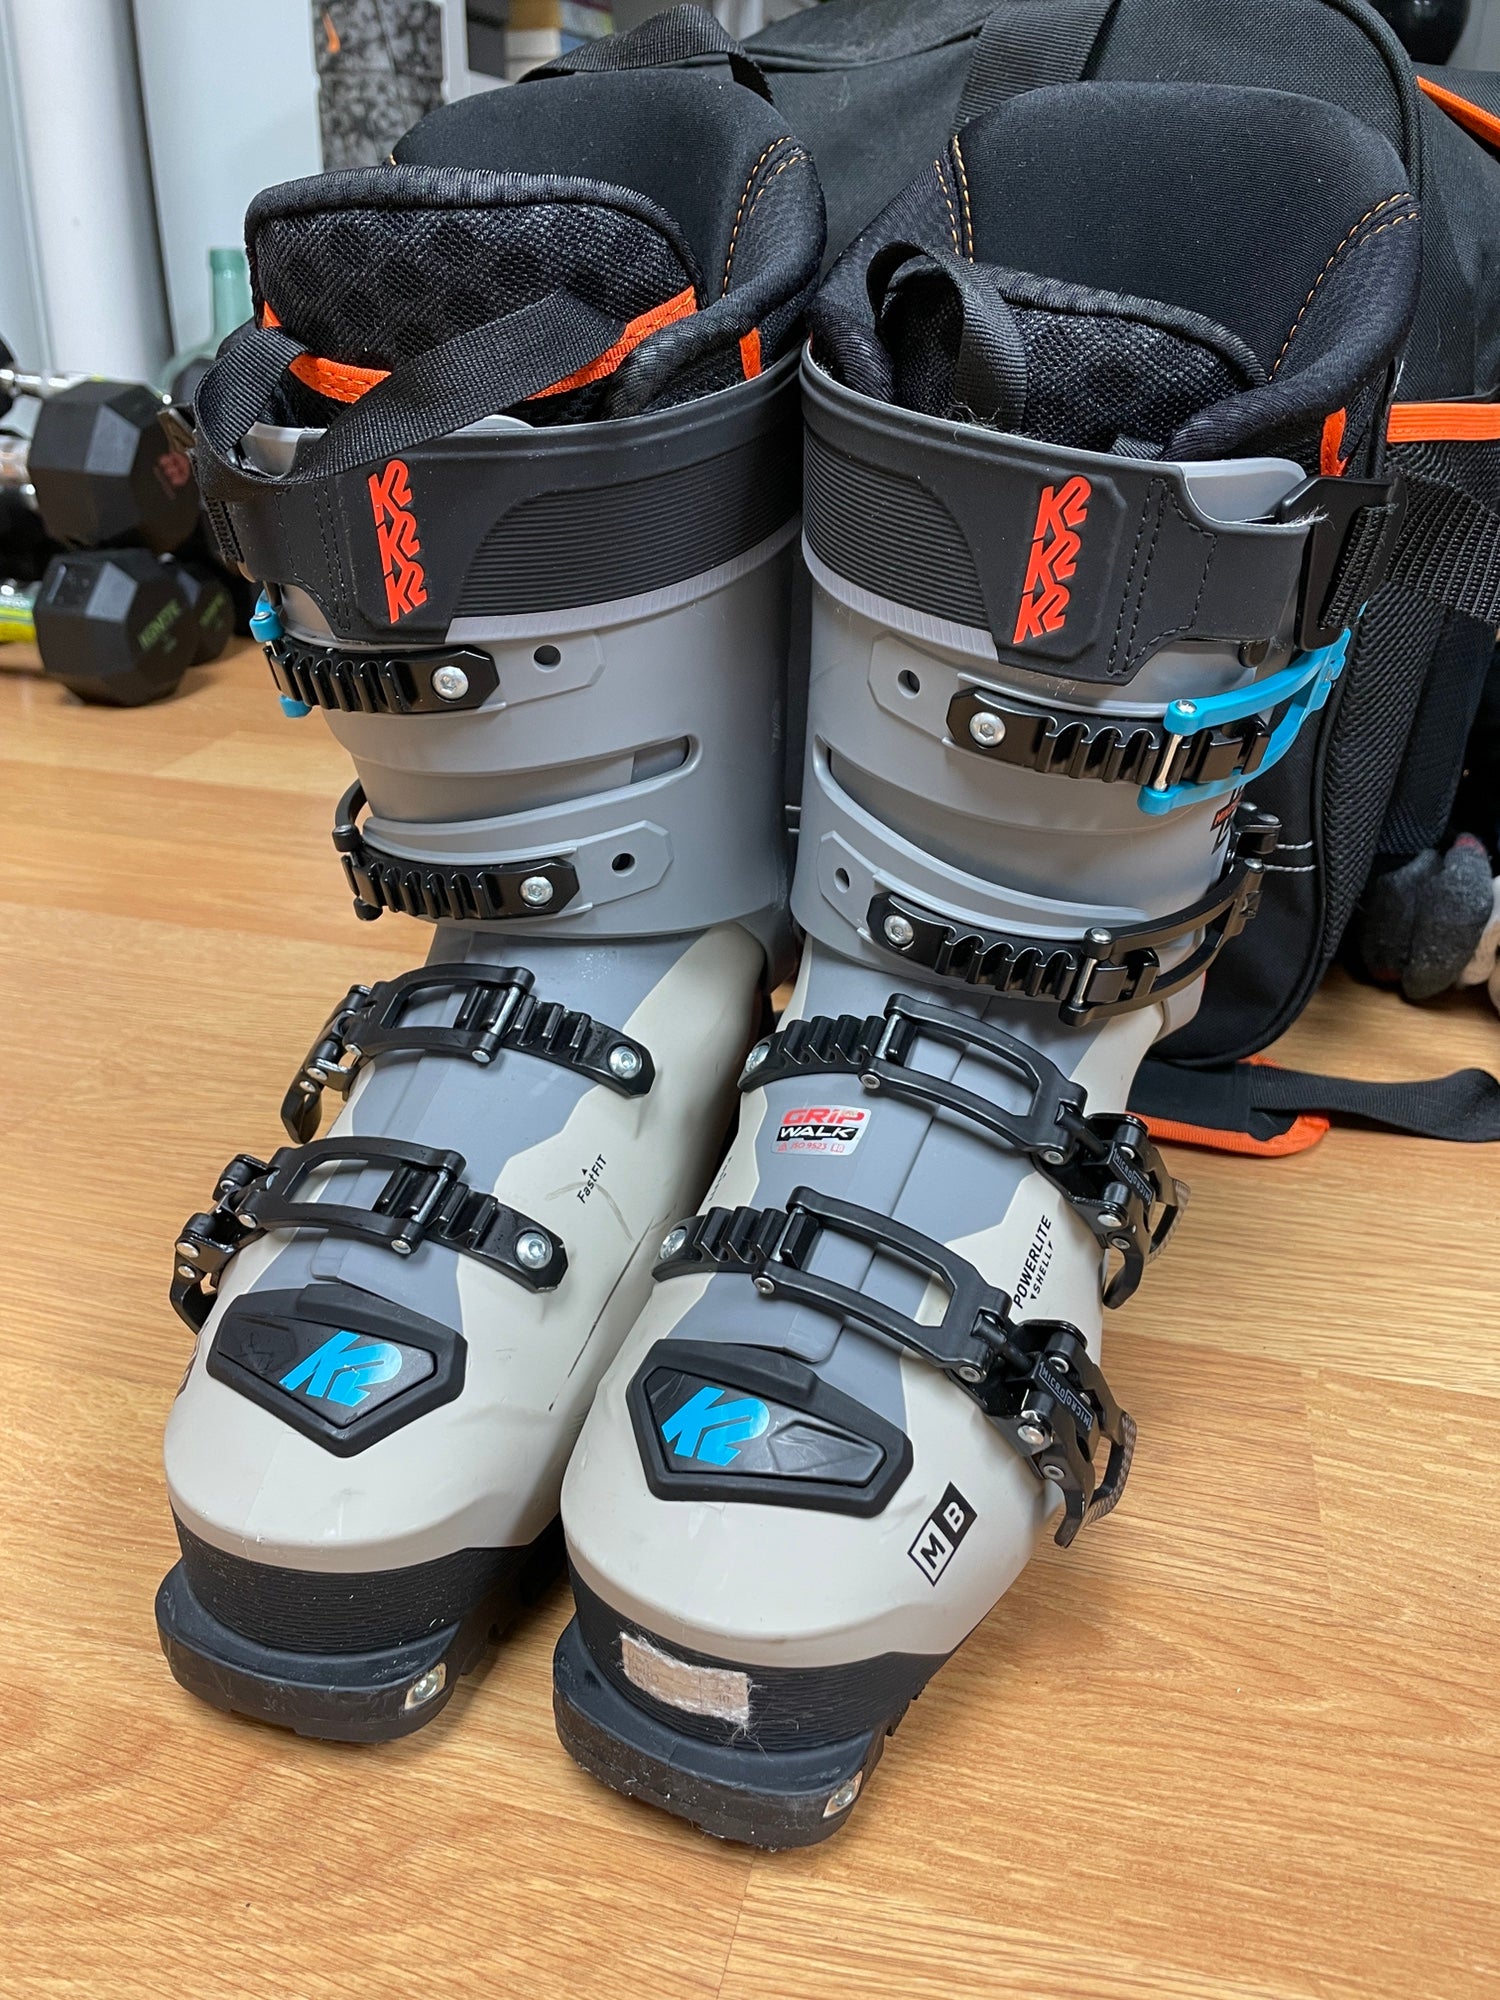 K2 Mindbender 120 26.5 Ski Boots 2022